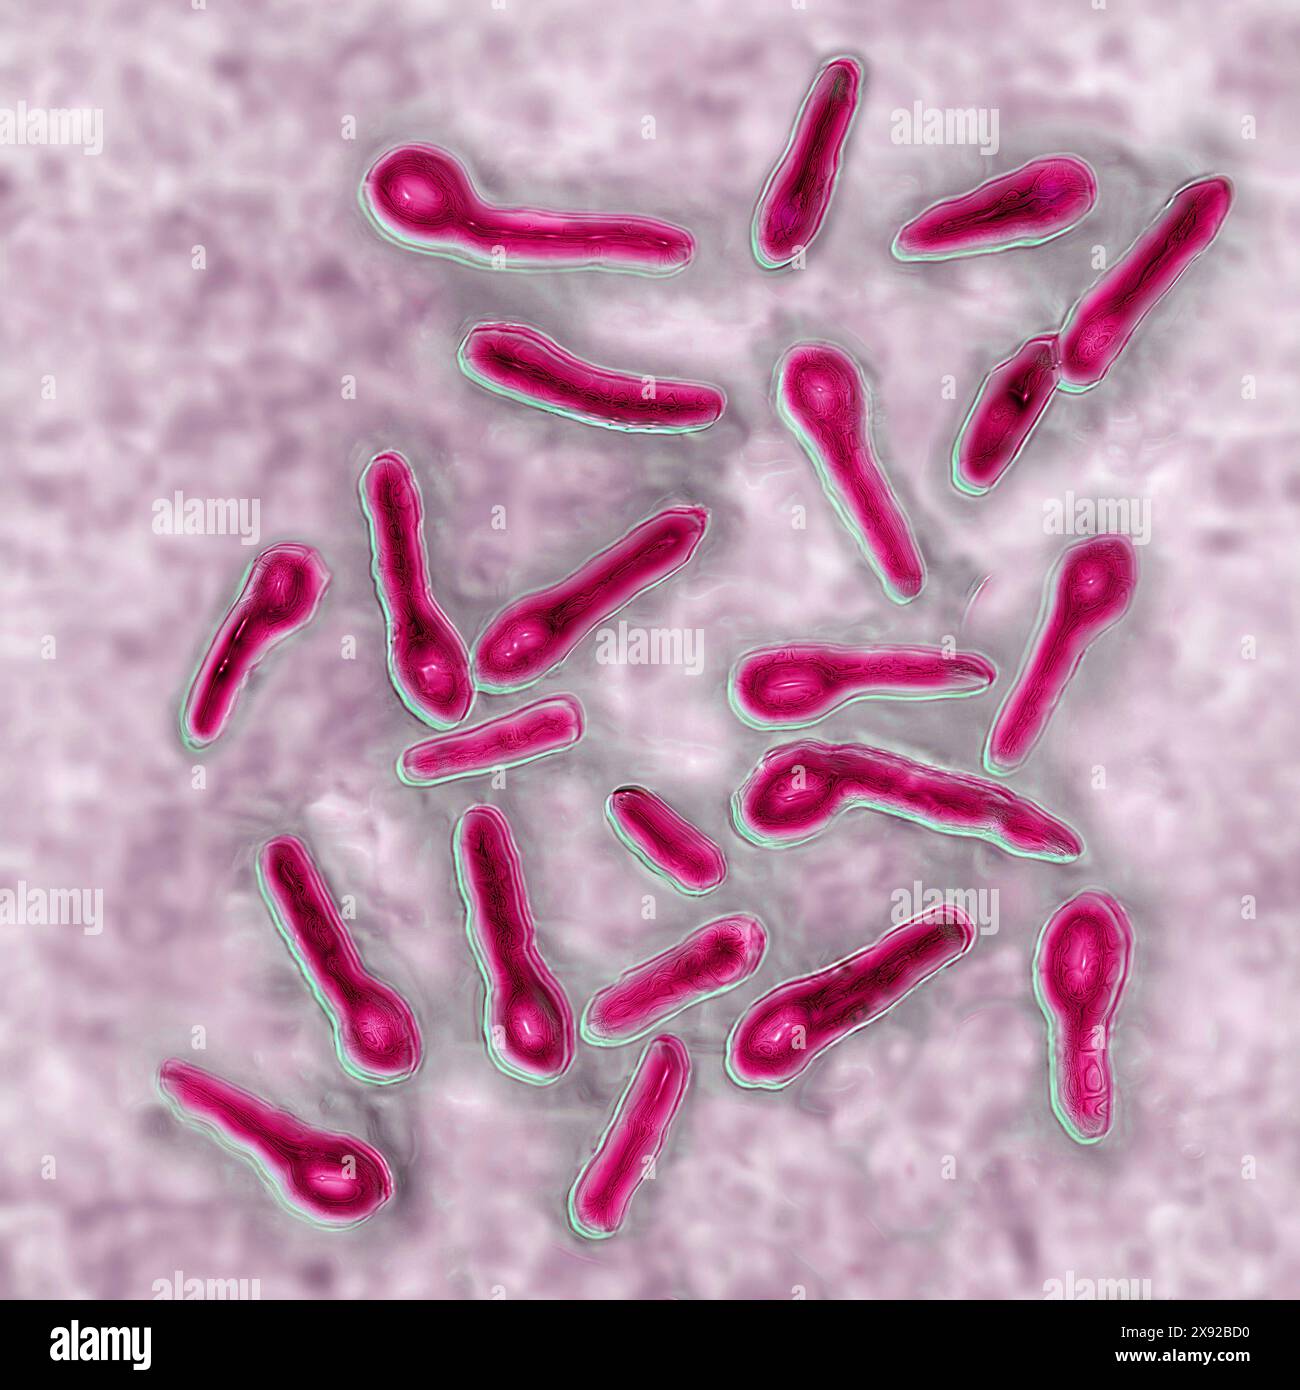 Clostridium tetani ou bacille de NicolaÃer est la bactérie responsable du tétanos. Même une contamination minimale dans une plaie conduit à la production d'une toxine neurotrope, la tétanospasmine, qui se lie au système nerveux central, causant des contractures et une paralysie. Image produite par microscopie optique. Bacille tétanique 016813 060 Banque D'Images